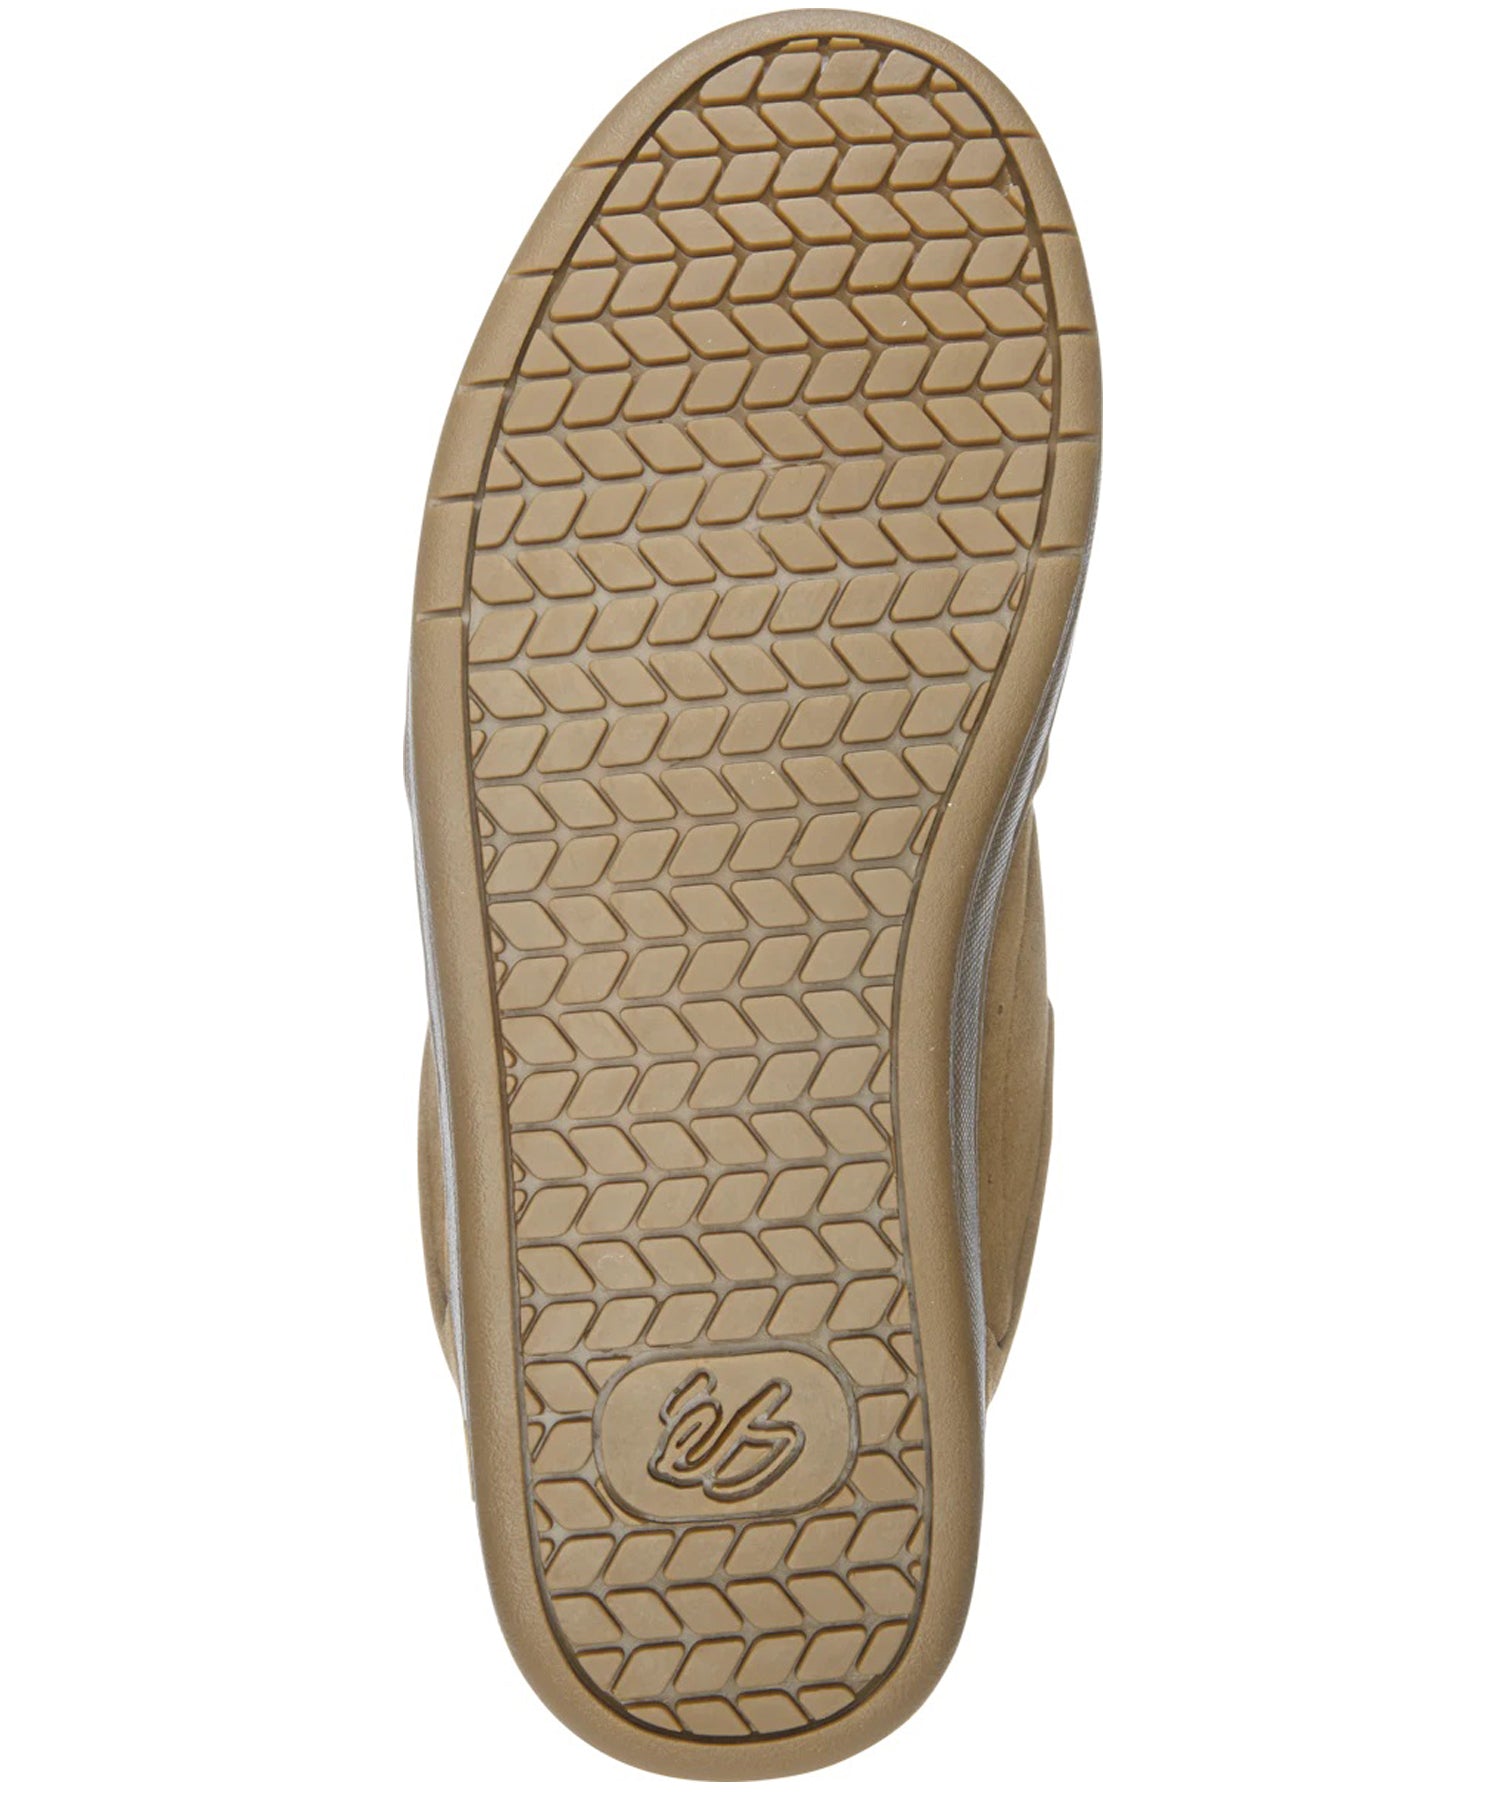 es-zapatillas-og-penny-color-marrón-modelo-pro-tom-penny-ante-Plantillas de espuma eva moldeada-lengüeta acolchada